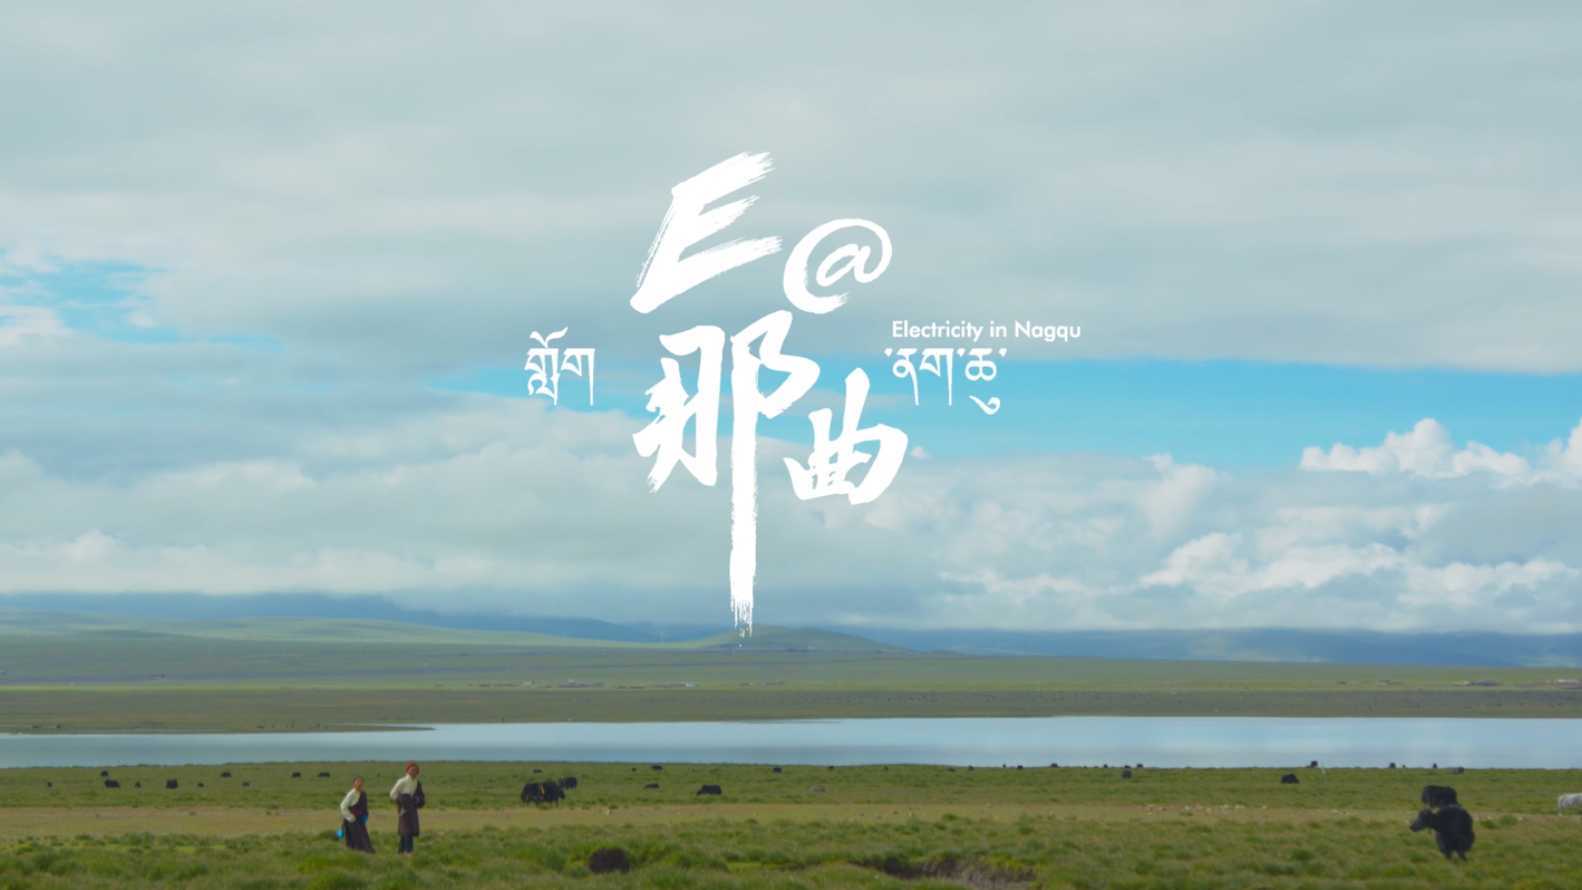 国家电网援藏宣传短片《E@那曲》